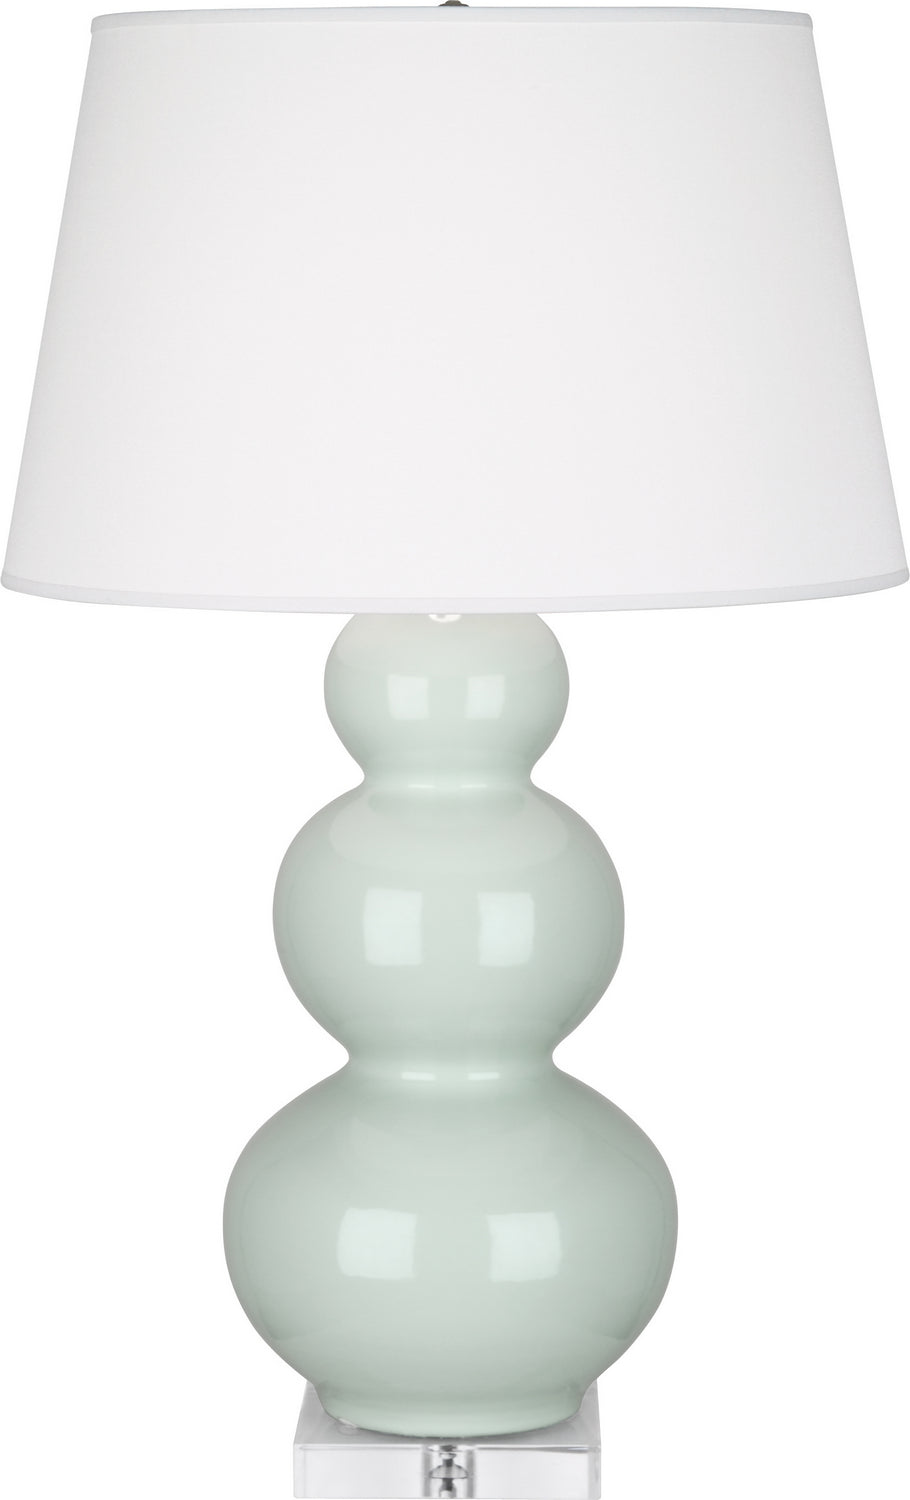 Robert Abbey - One Light Table Lamp - Triple Gourd - Celadon Glazed Ceramic w/Lucite Base- Union Lighting Luminaires Decor